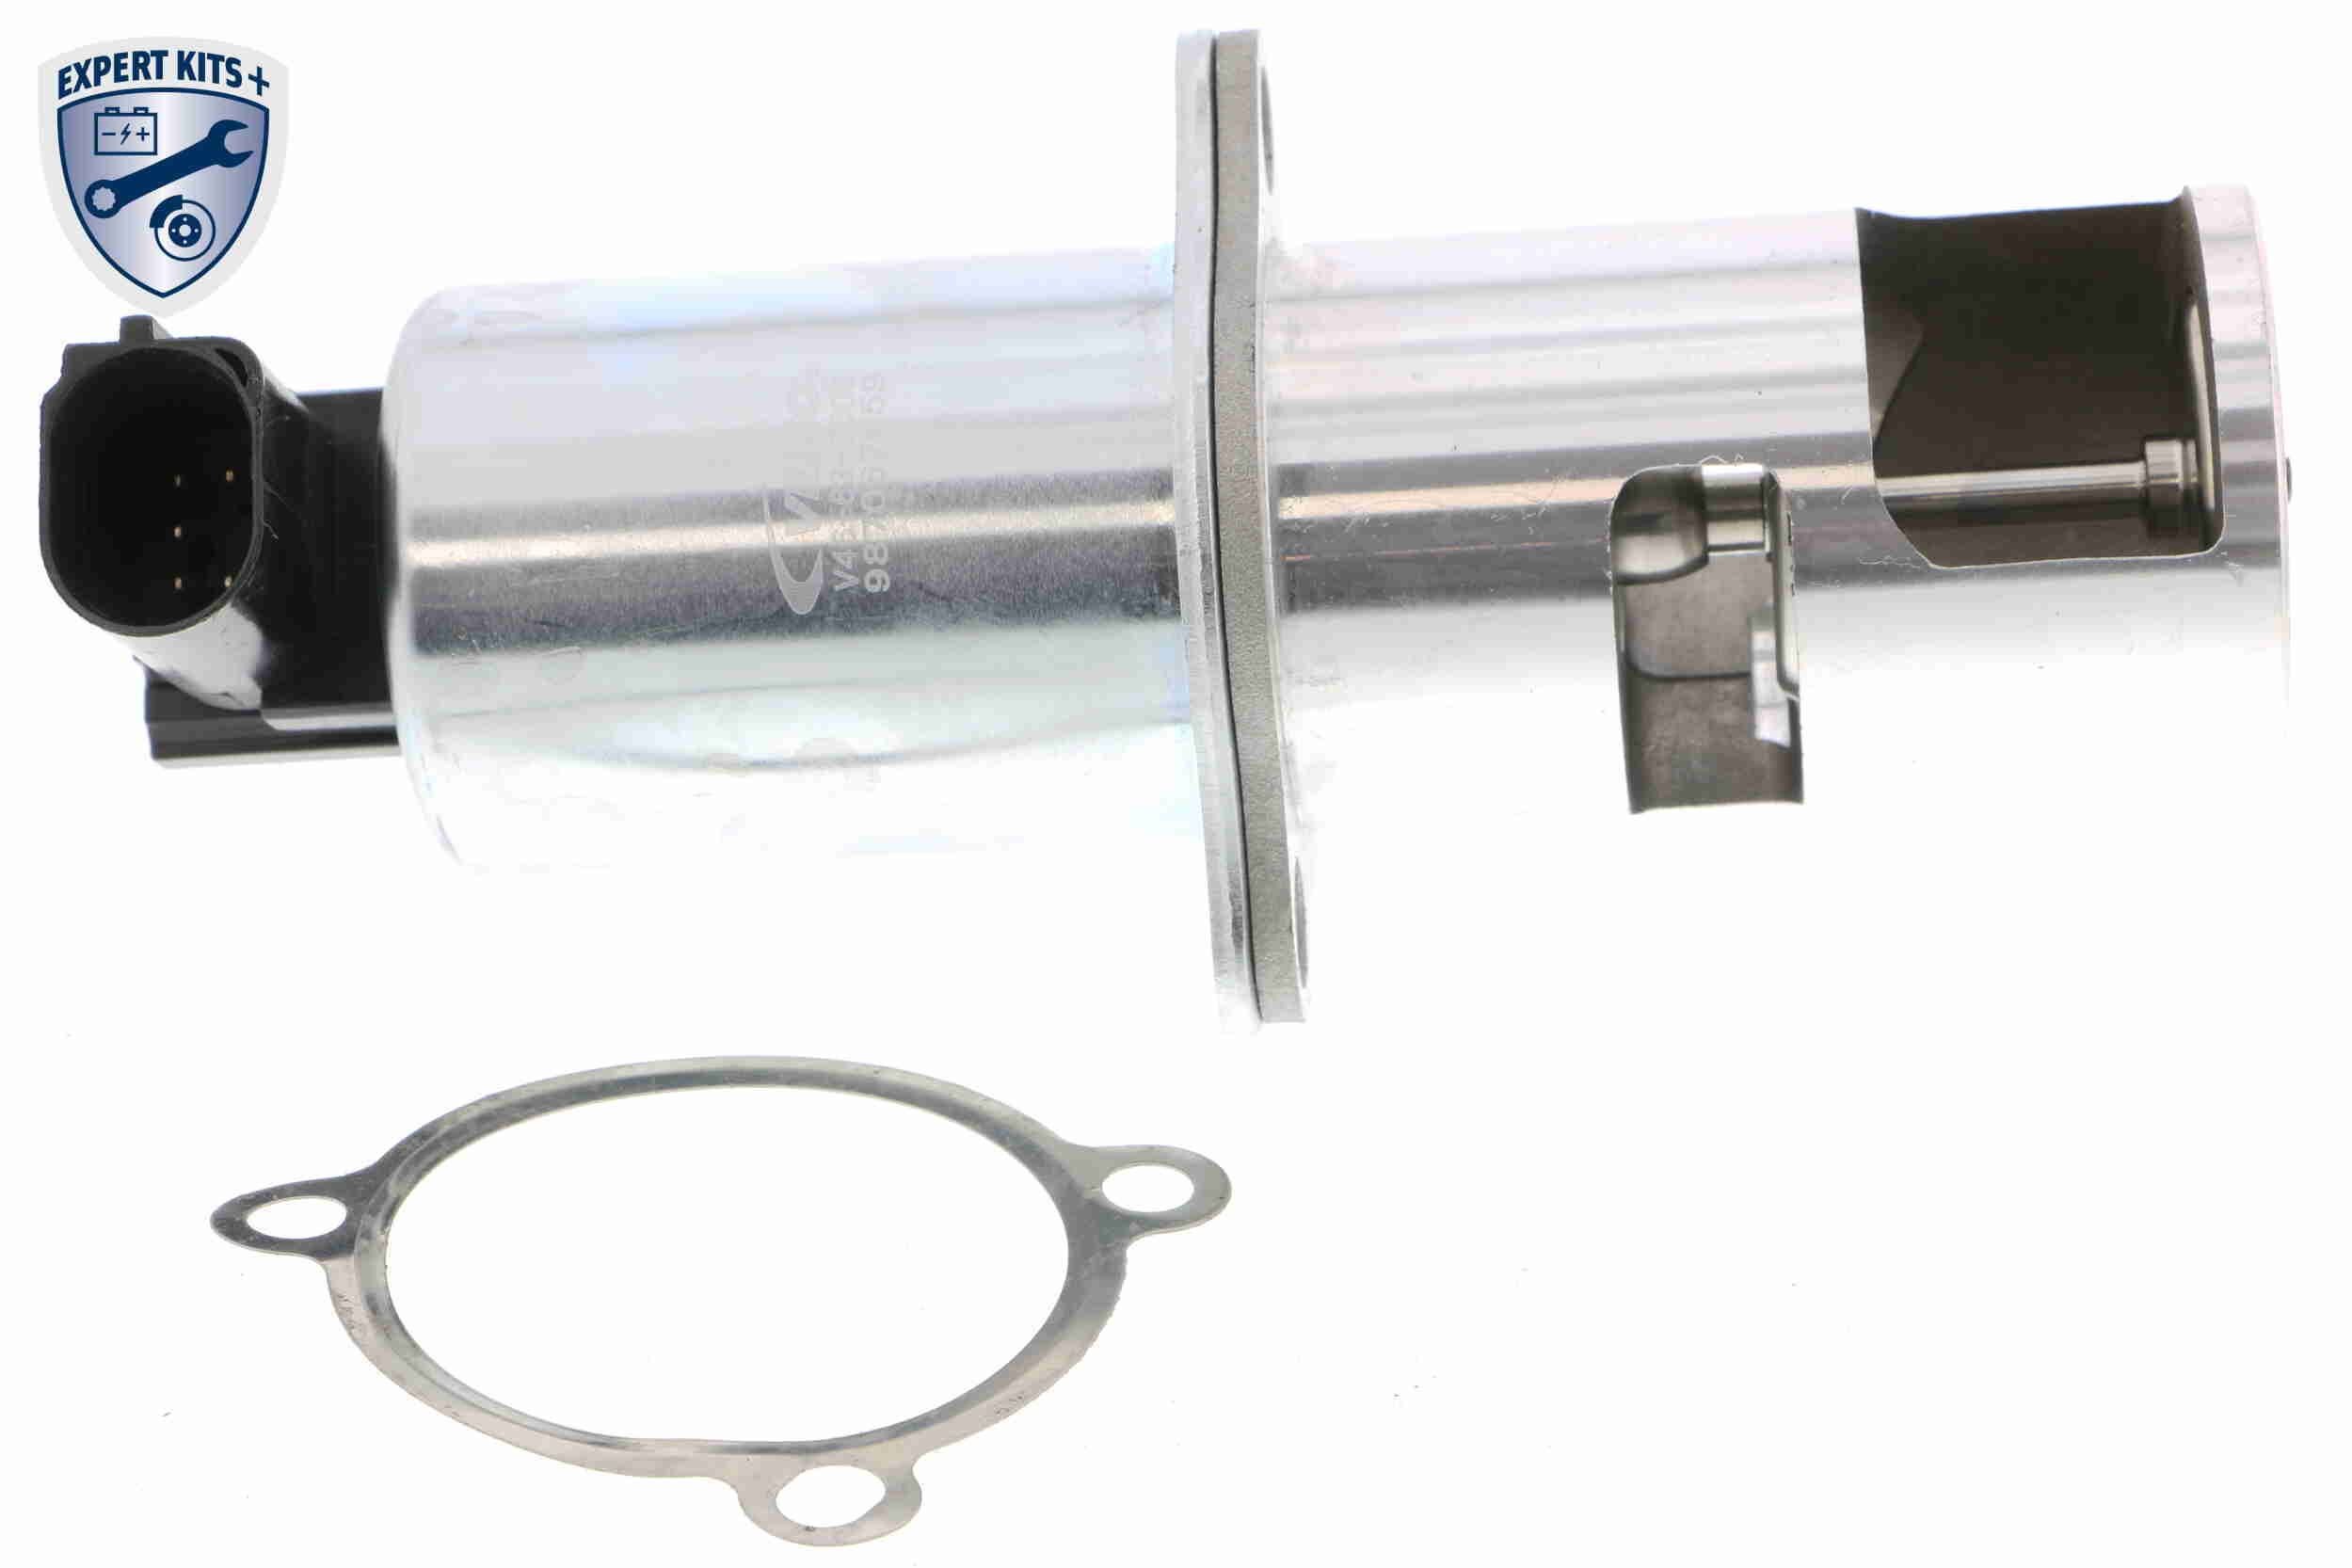 V46-63-0006 VEMO EXPERT KITS +, elektrisch, Magnetventil, mit Dichtung Anschlussanzahl: 5 AGR-Ventil V46-63-0006 günstig kaufen